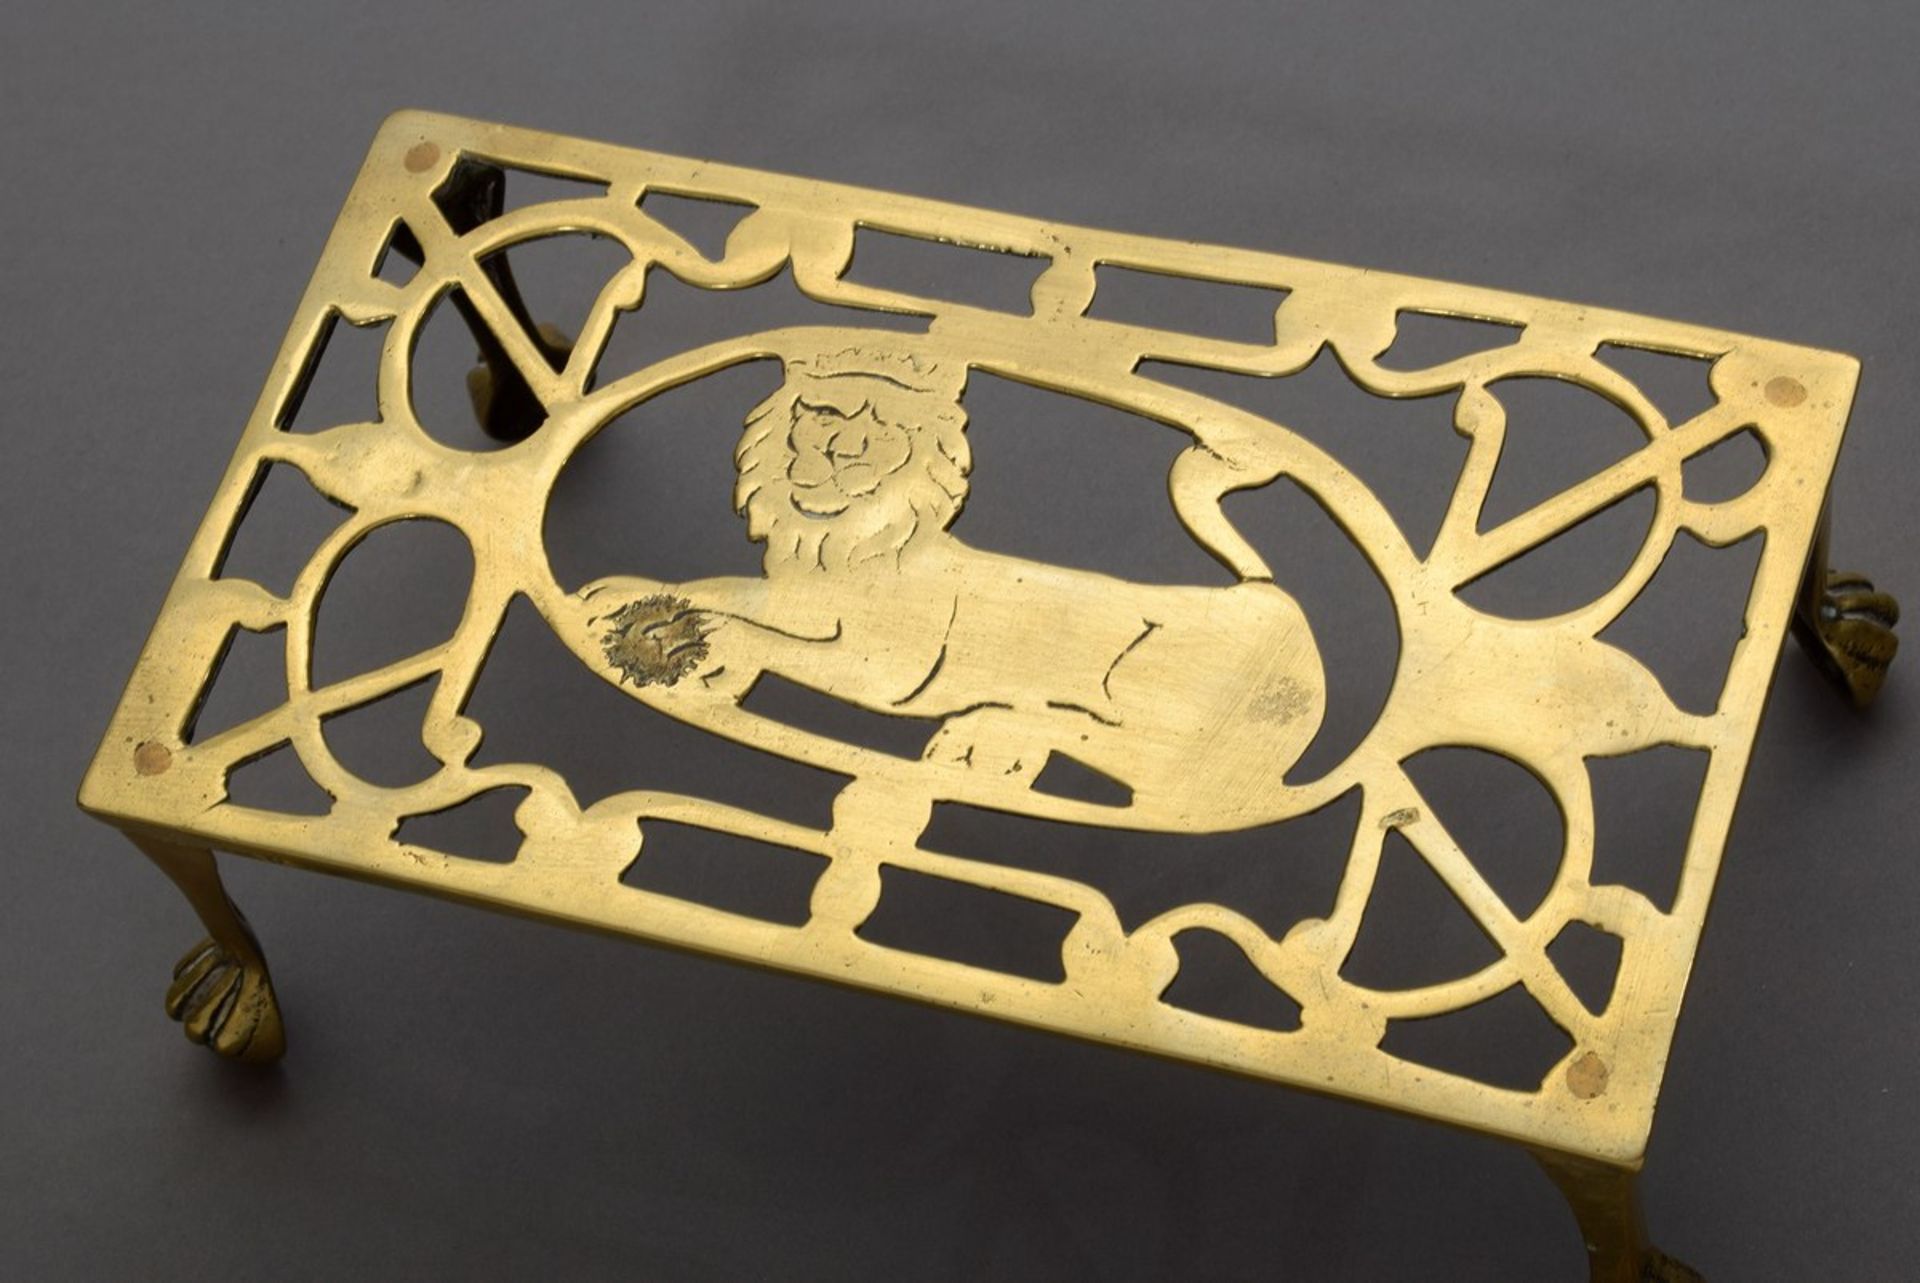 Durchbrochener Messing Kettlestand mit Löwen Motiv auf Tatzenfüßen, 19.Jh., 10x26x14,5cm, etwas - Bild 2 aus 3